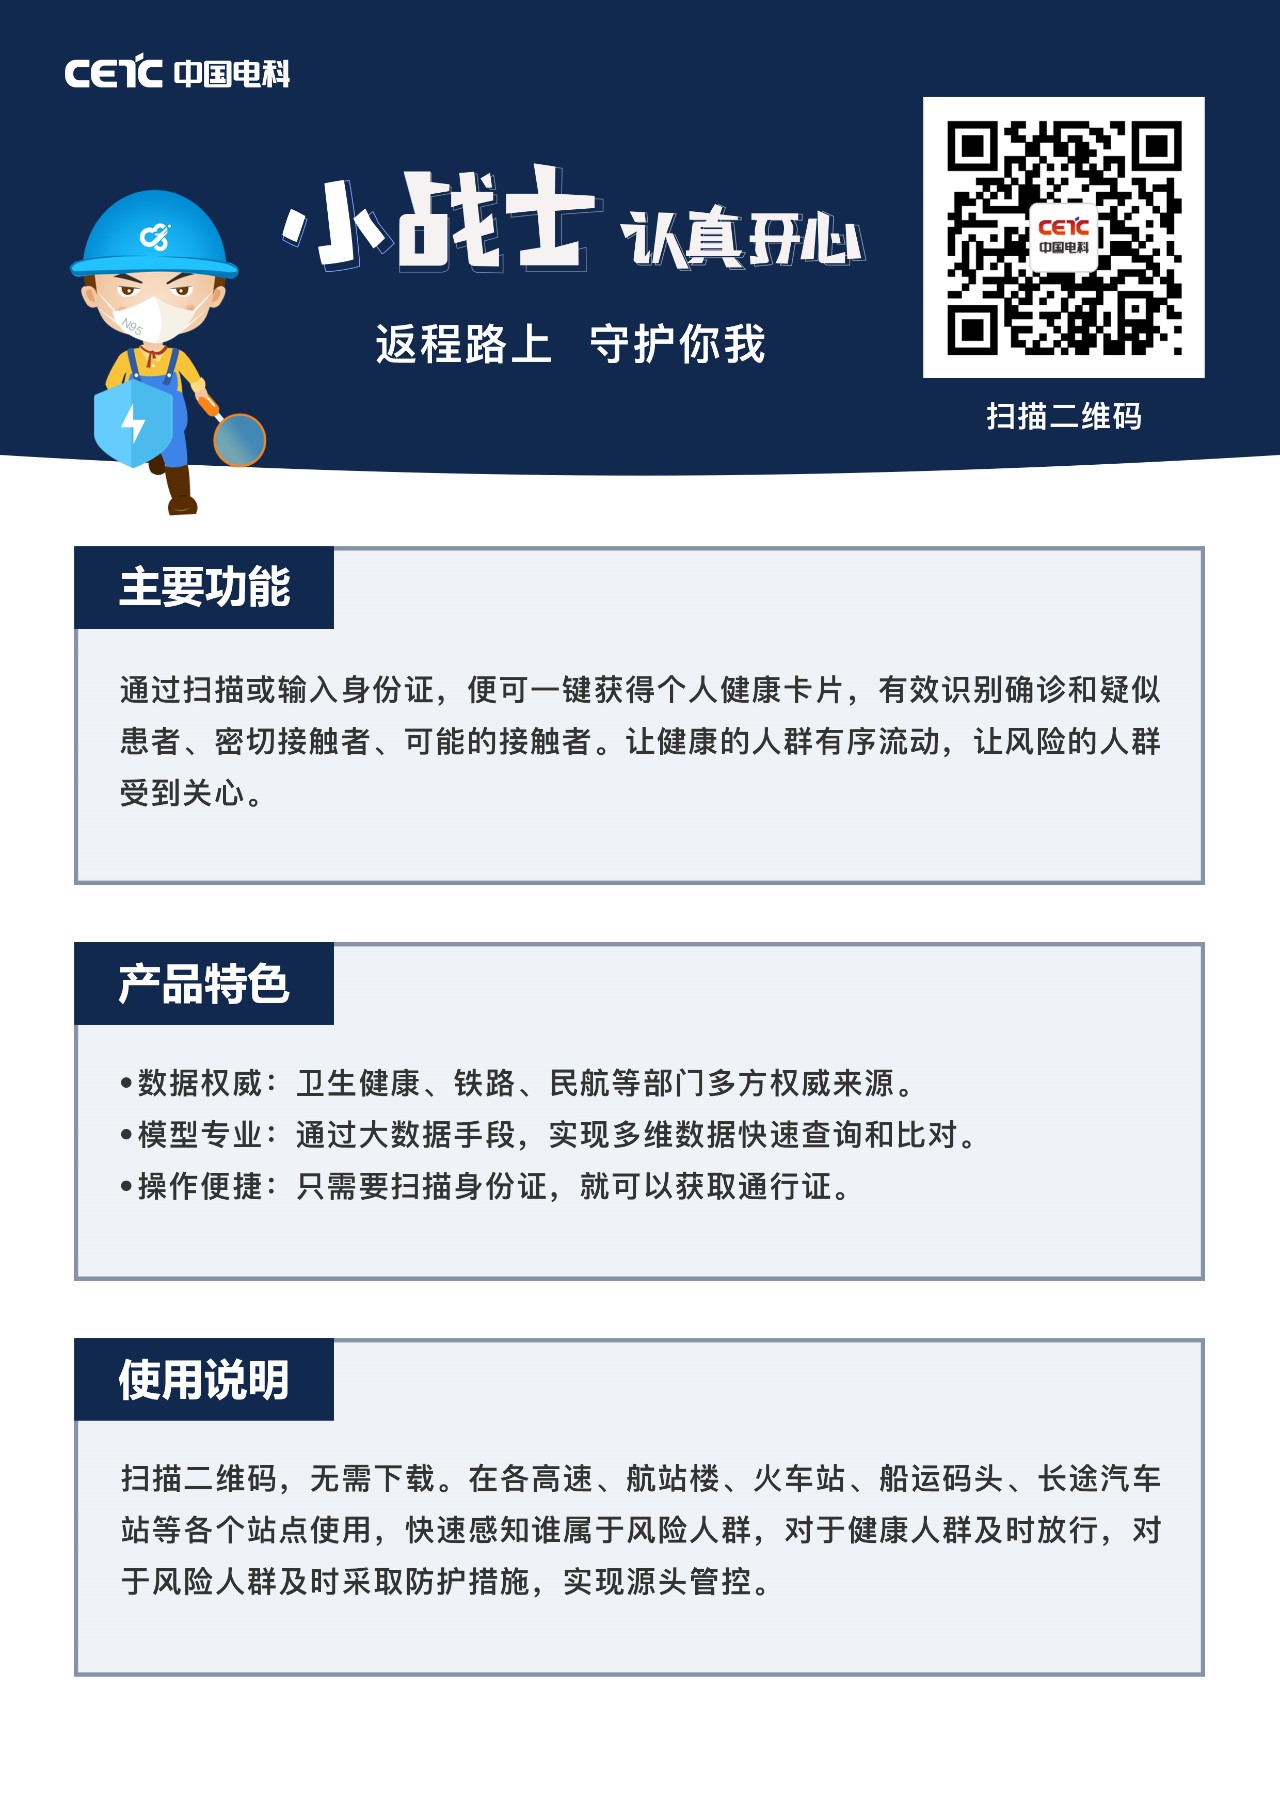 中国电科推出疫情防控和复工复产三款软件-国资论坛